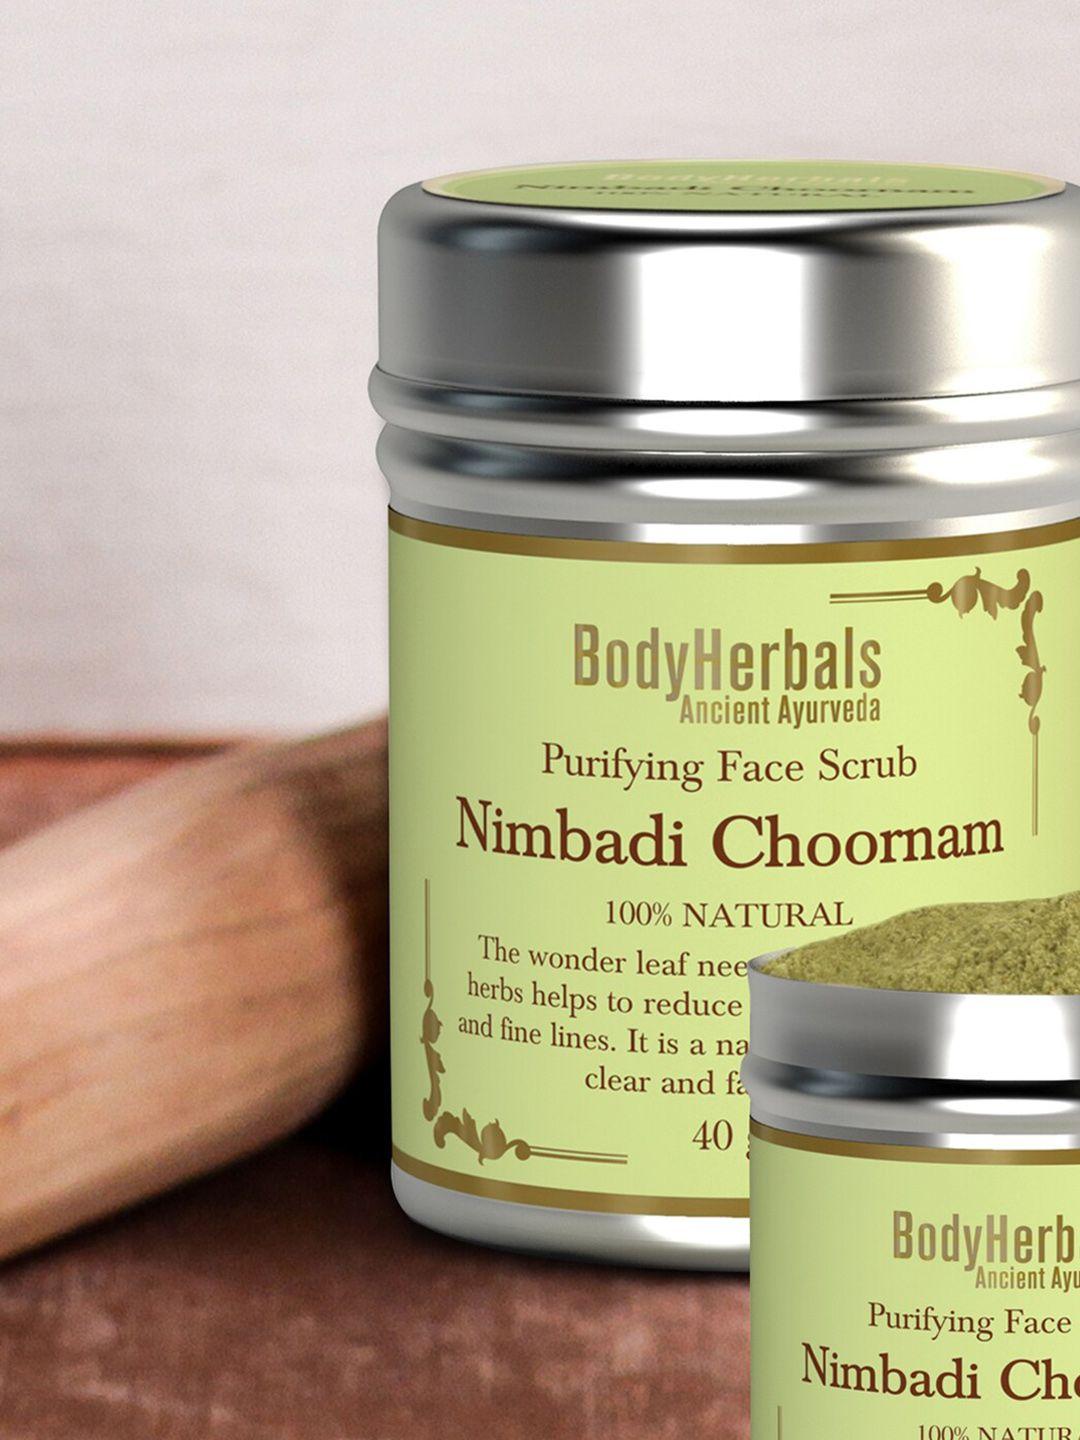 bodyherbals nimbadi choornam purifying face scrub for skin brightening 40g